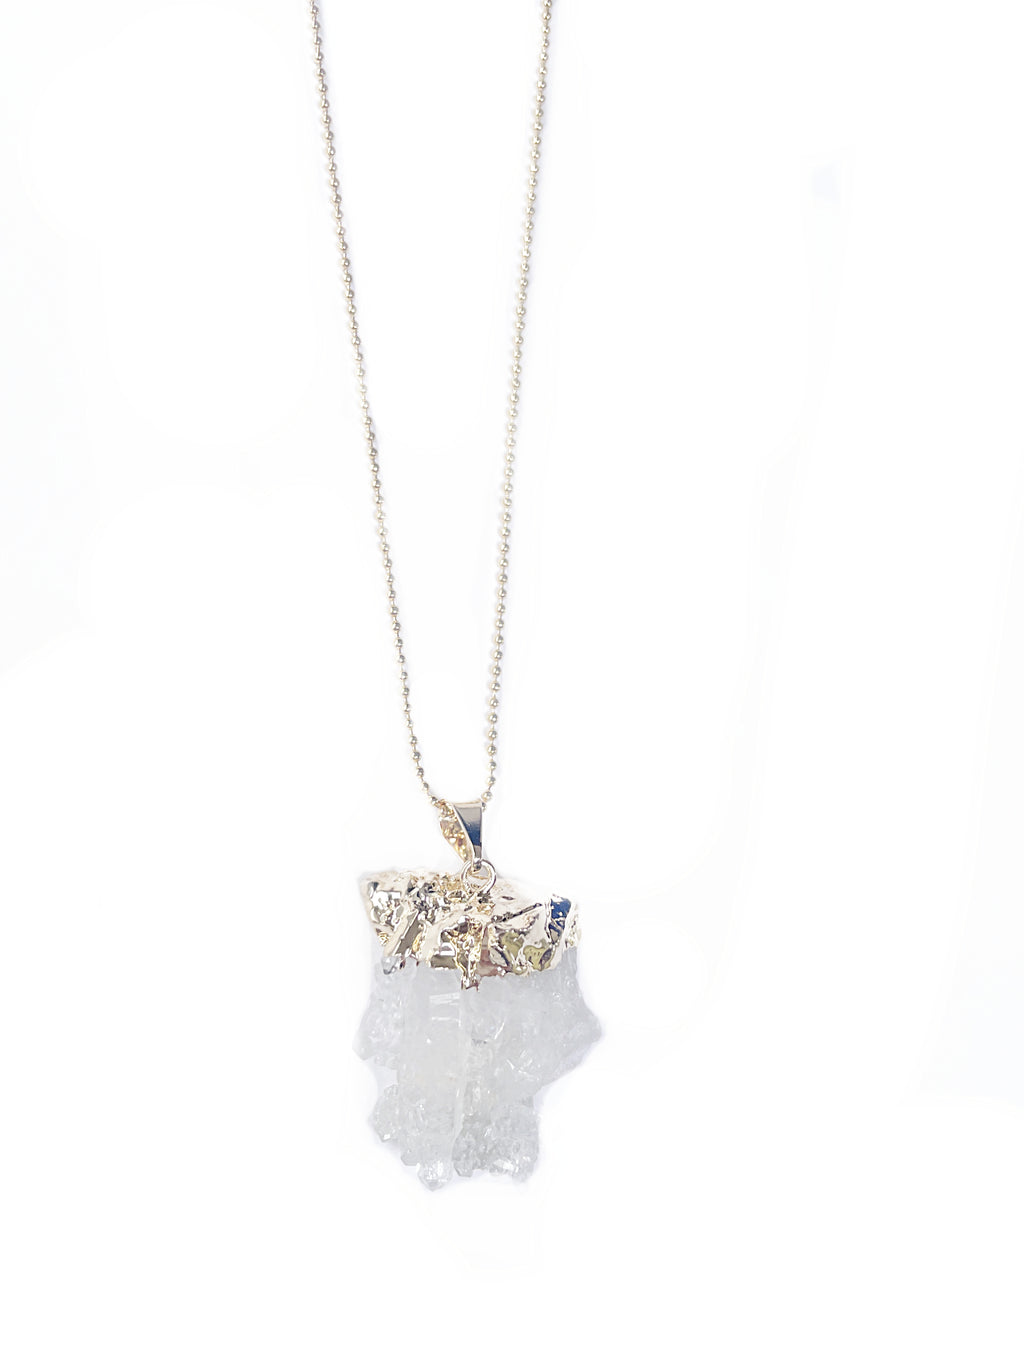 Bergkristall Cluster Halskette vergoldet Crystal and Sage Jewelry